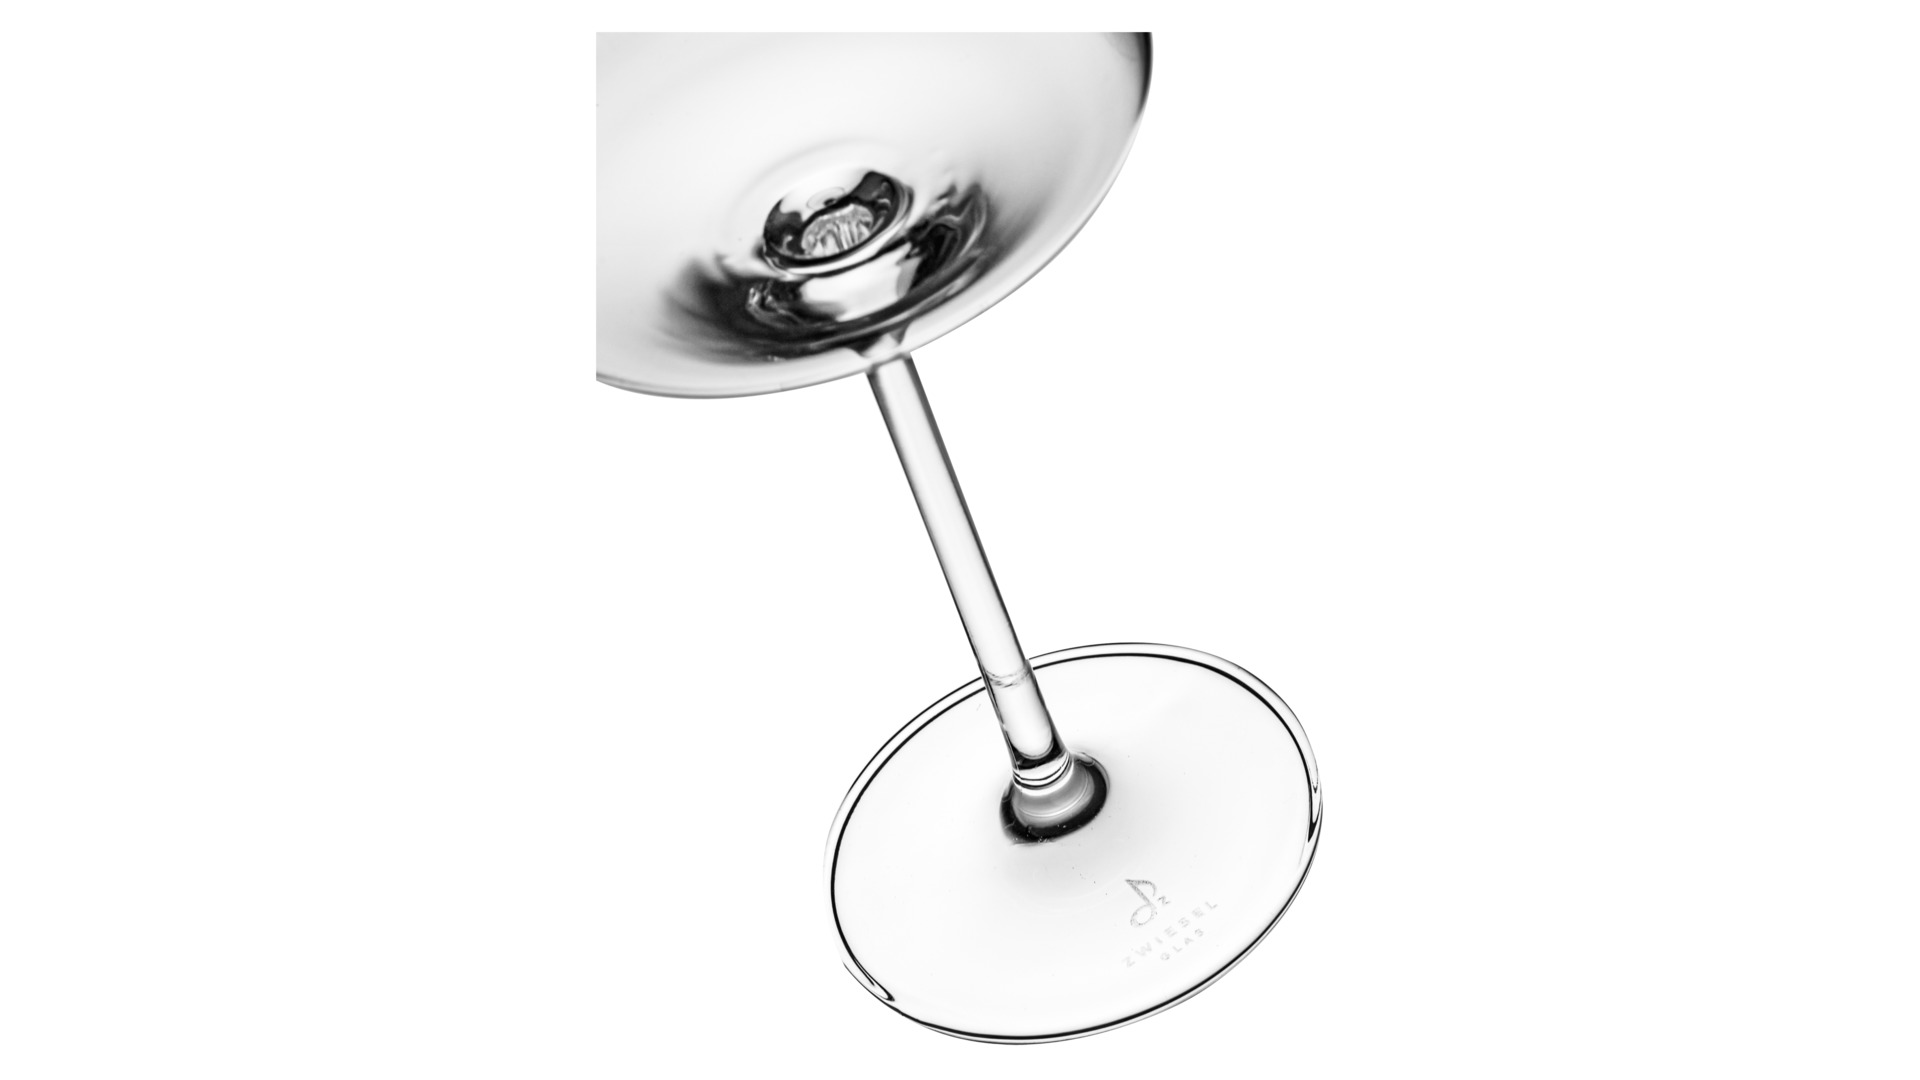 Набор Zwiesel Glas Vivid Senses из 4 бокалов для красного вина 660 мл и 4 стаканов для воды 500 мл,